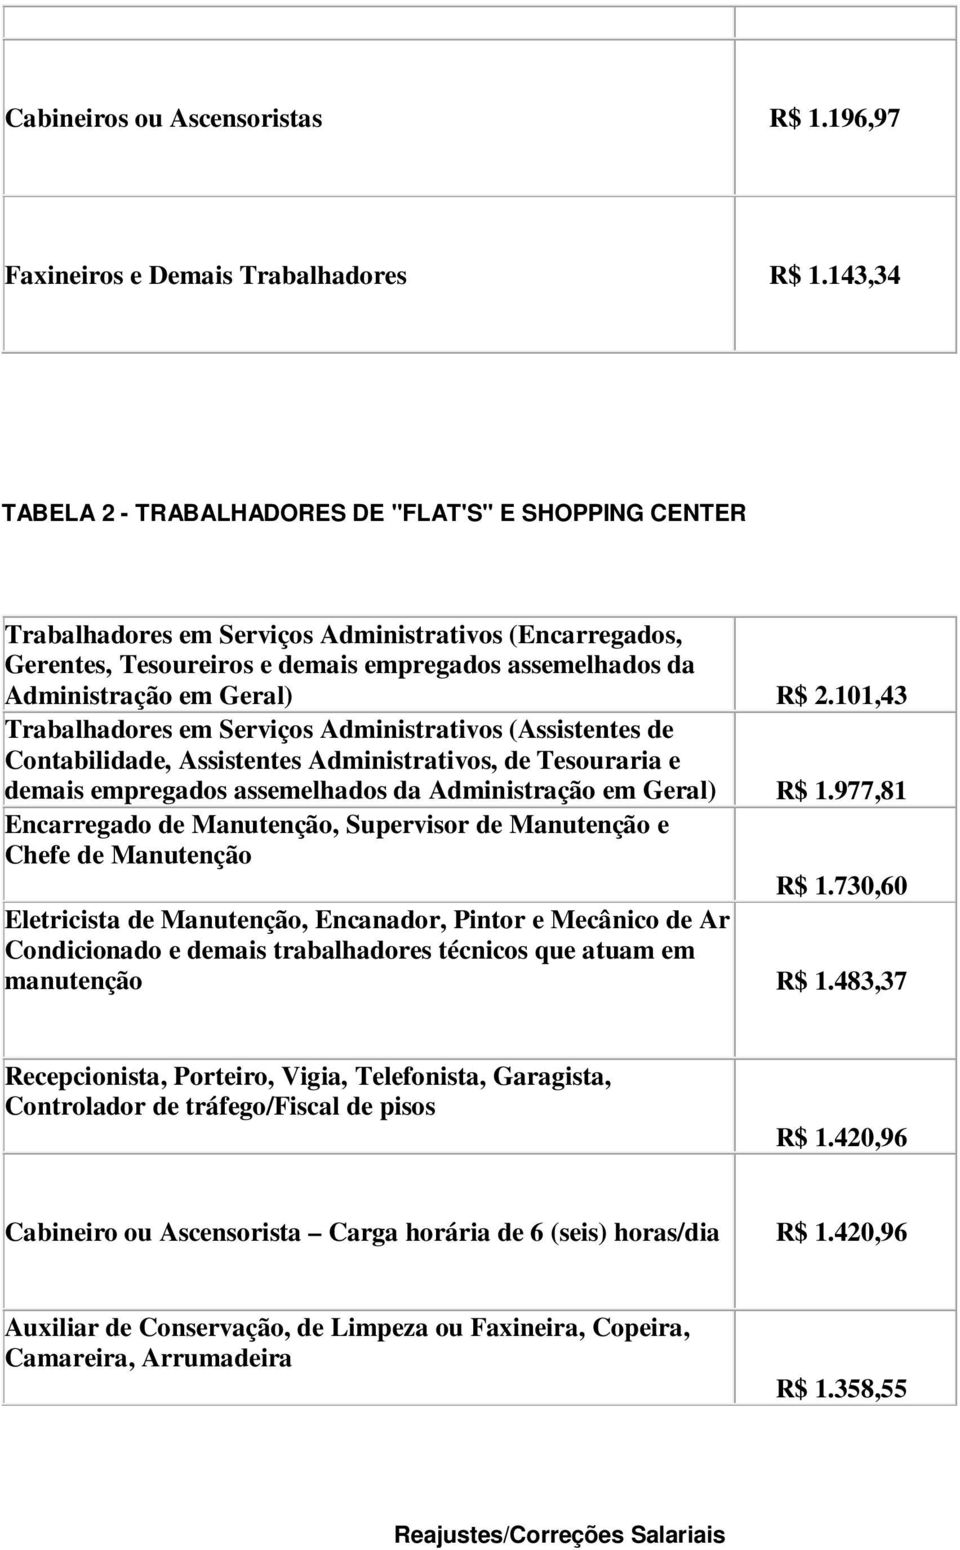 Geral) R$ 2.101,43 Trabalhadores em Serviços Administrativos (Assistentes de Contabilidade, Assistentes Administrativos, de Tesouraria e demais empregados assemelhados da Administração em Geral) R$ 1.